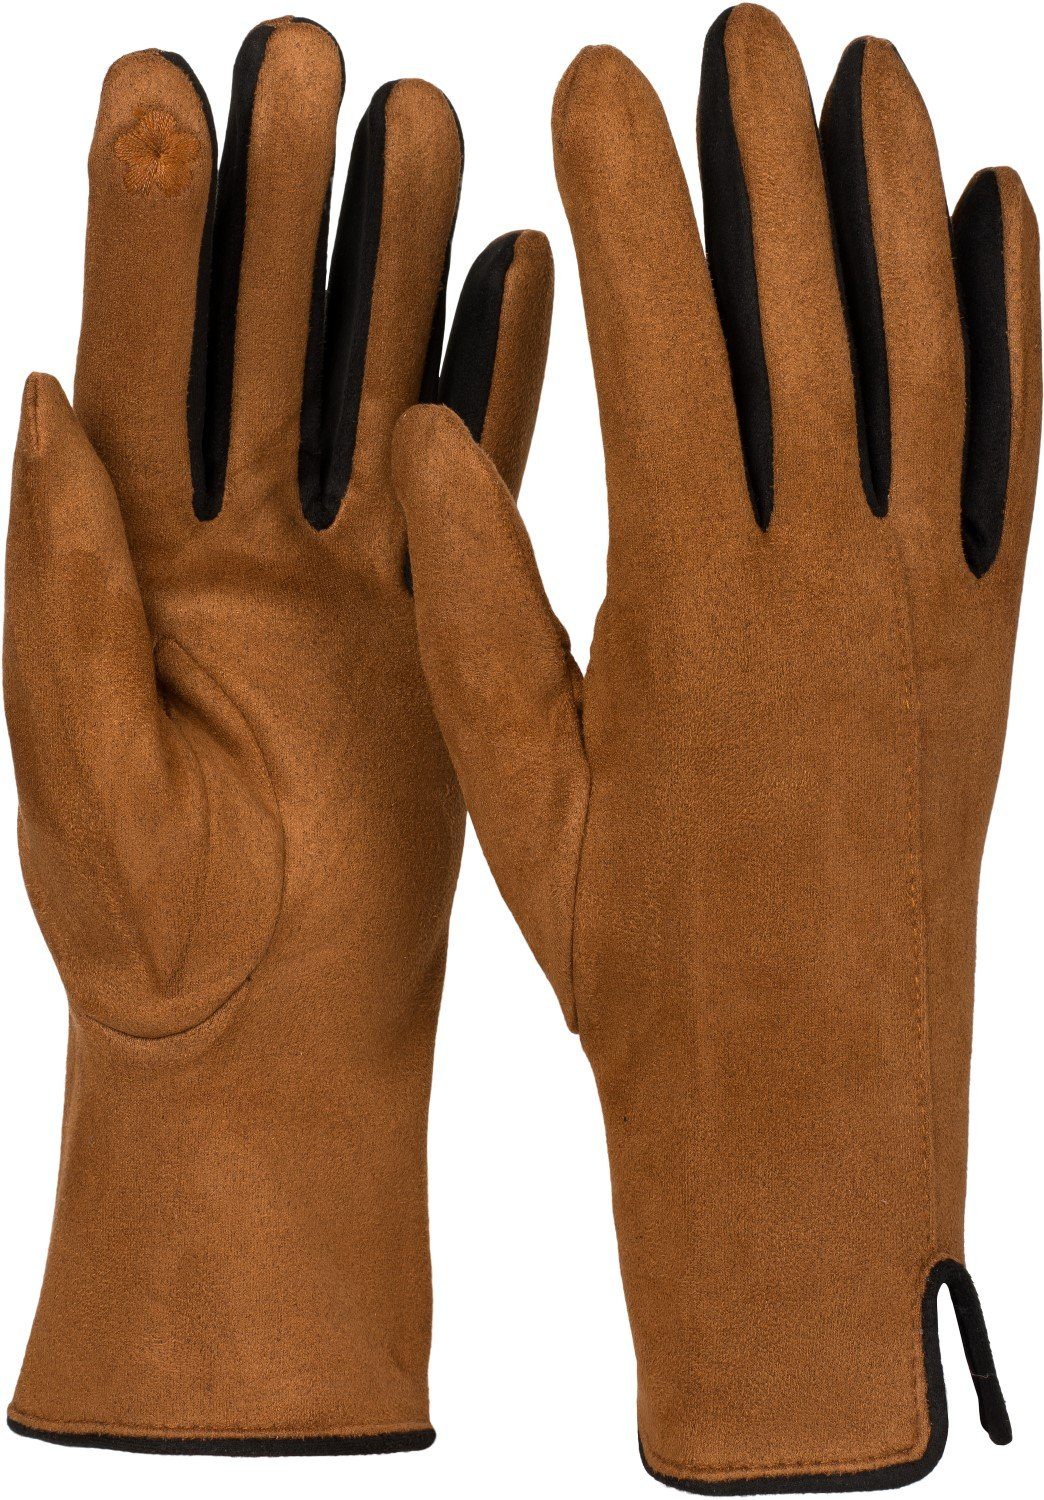 Blingko Handschuhe Herren Damen Wärmende Fingerhandschuhe Touchscreen Handschuhe Warm Gefüttert Rutschfester Griff Strick Fingerhandschuhe Sporthandschuhe